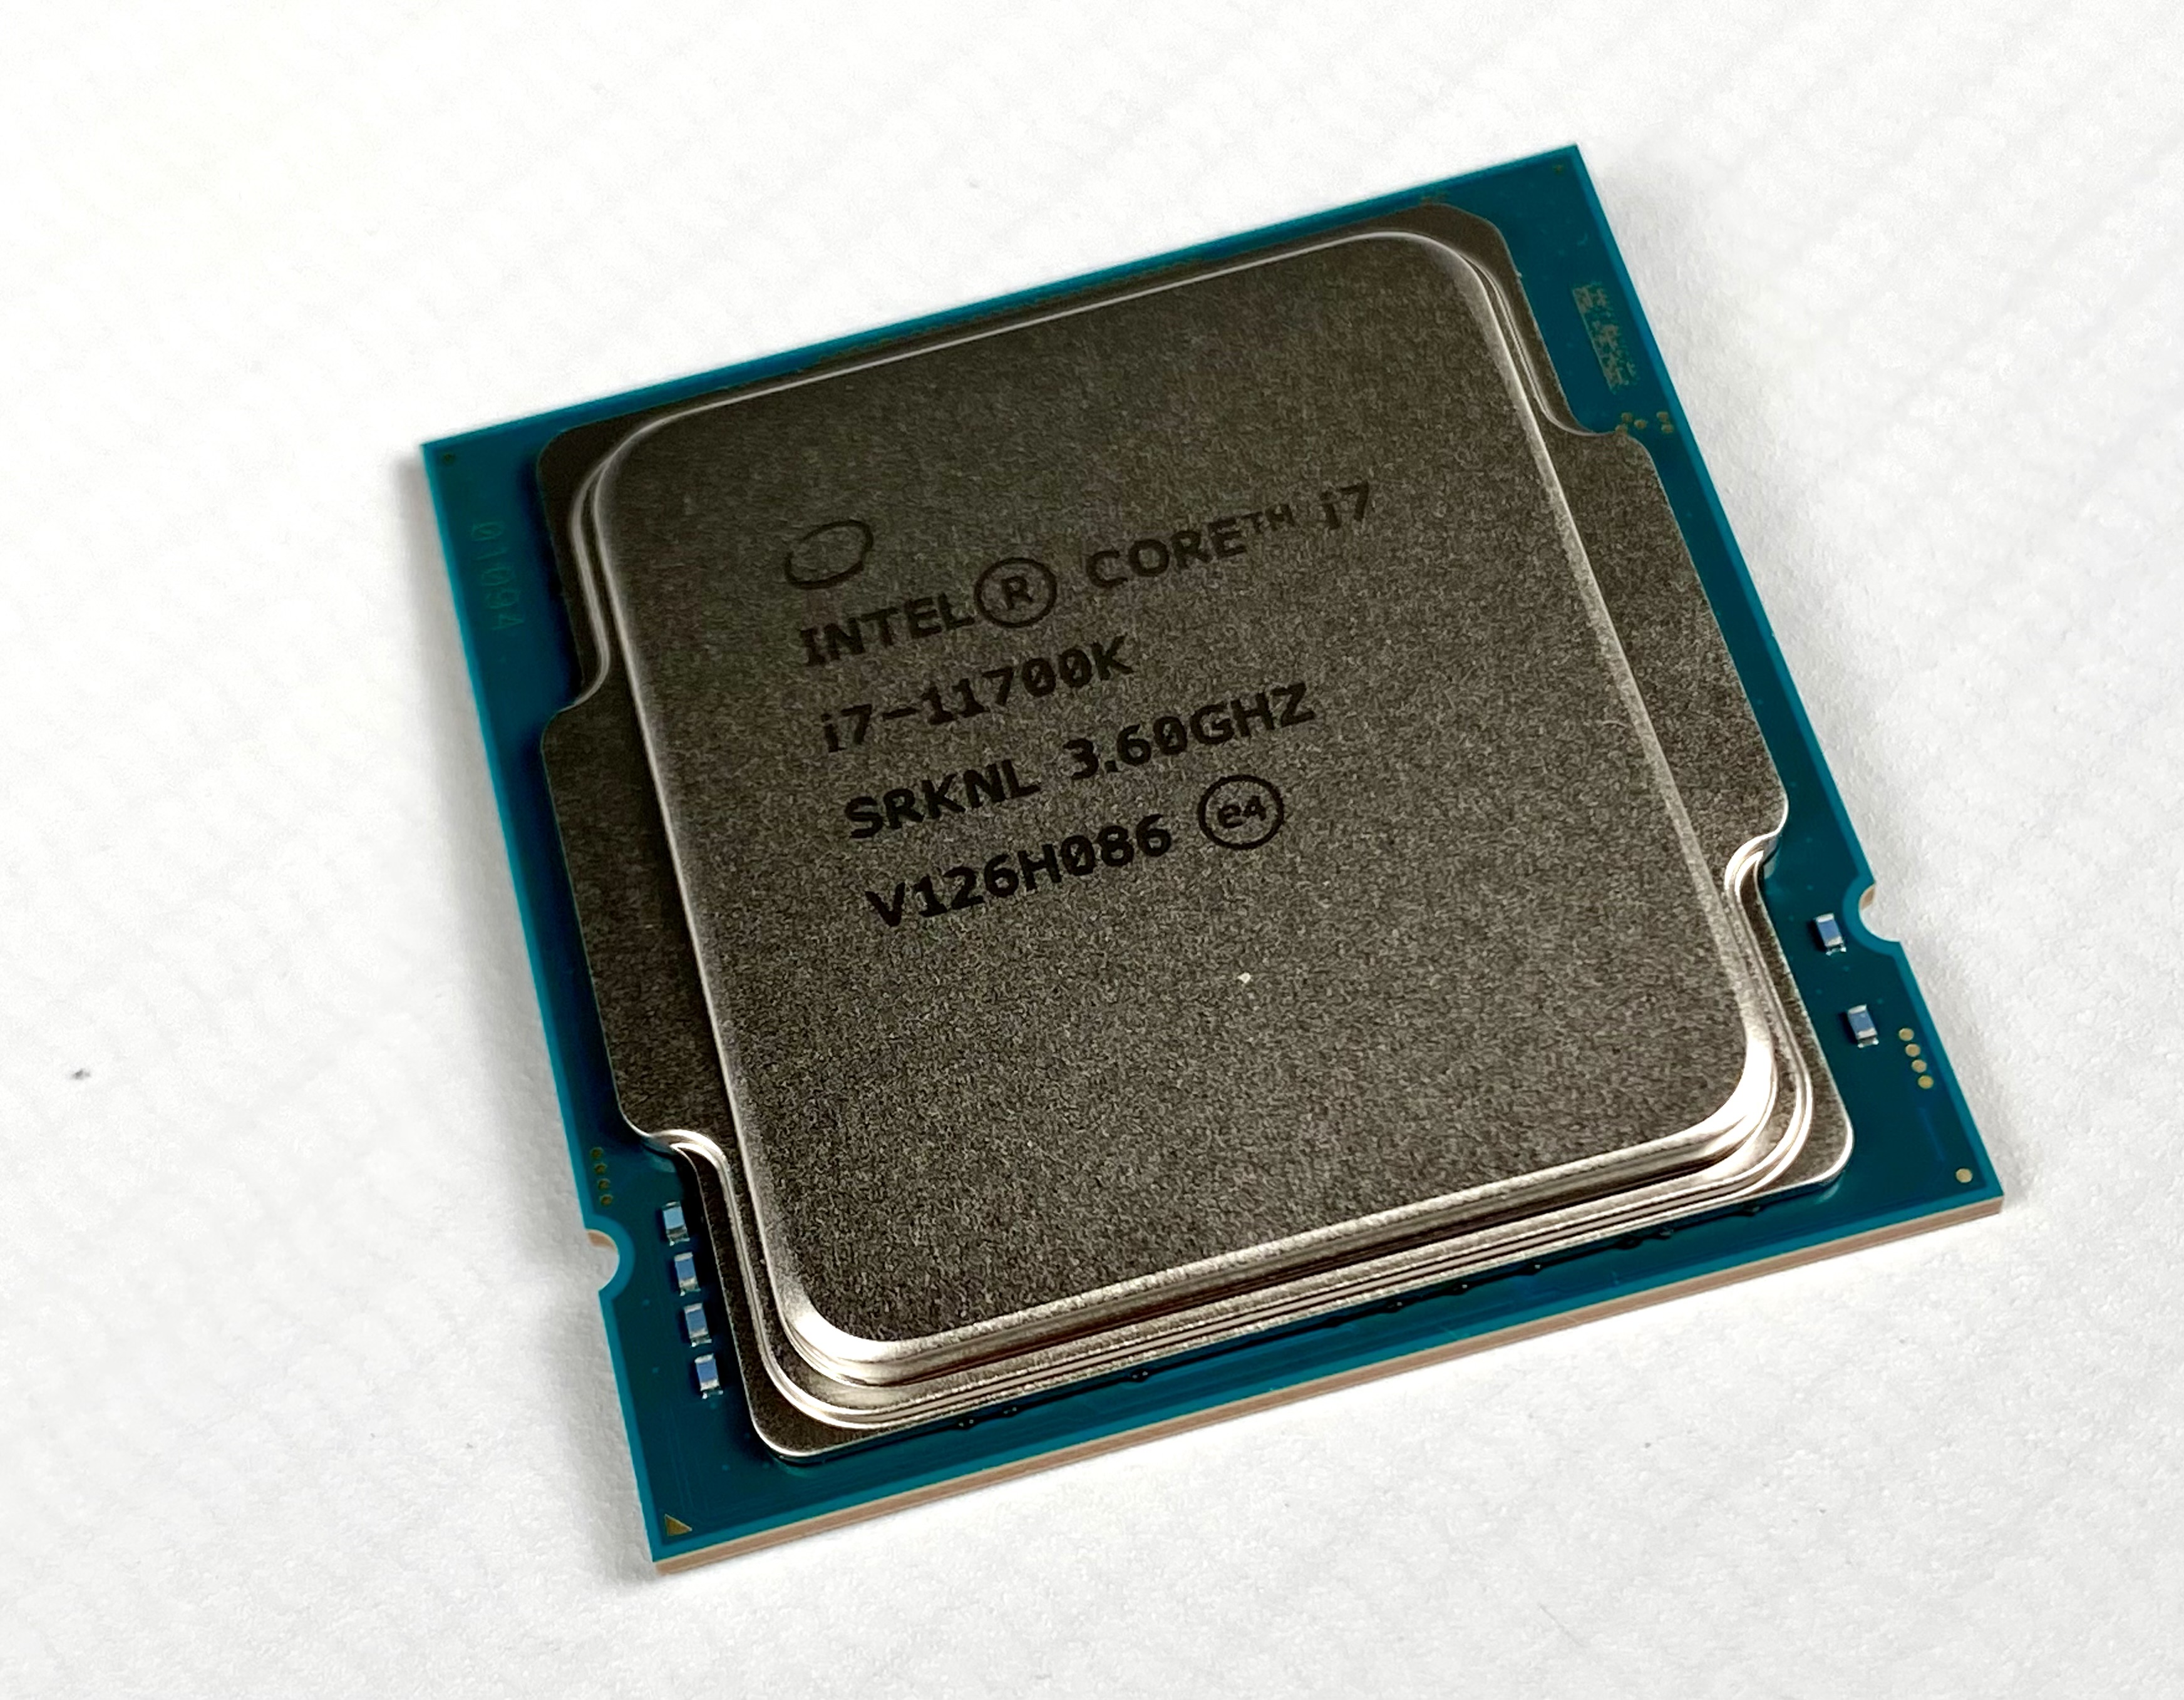 L'Intel Core i7-11700K testé 